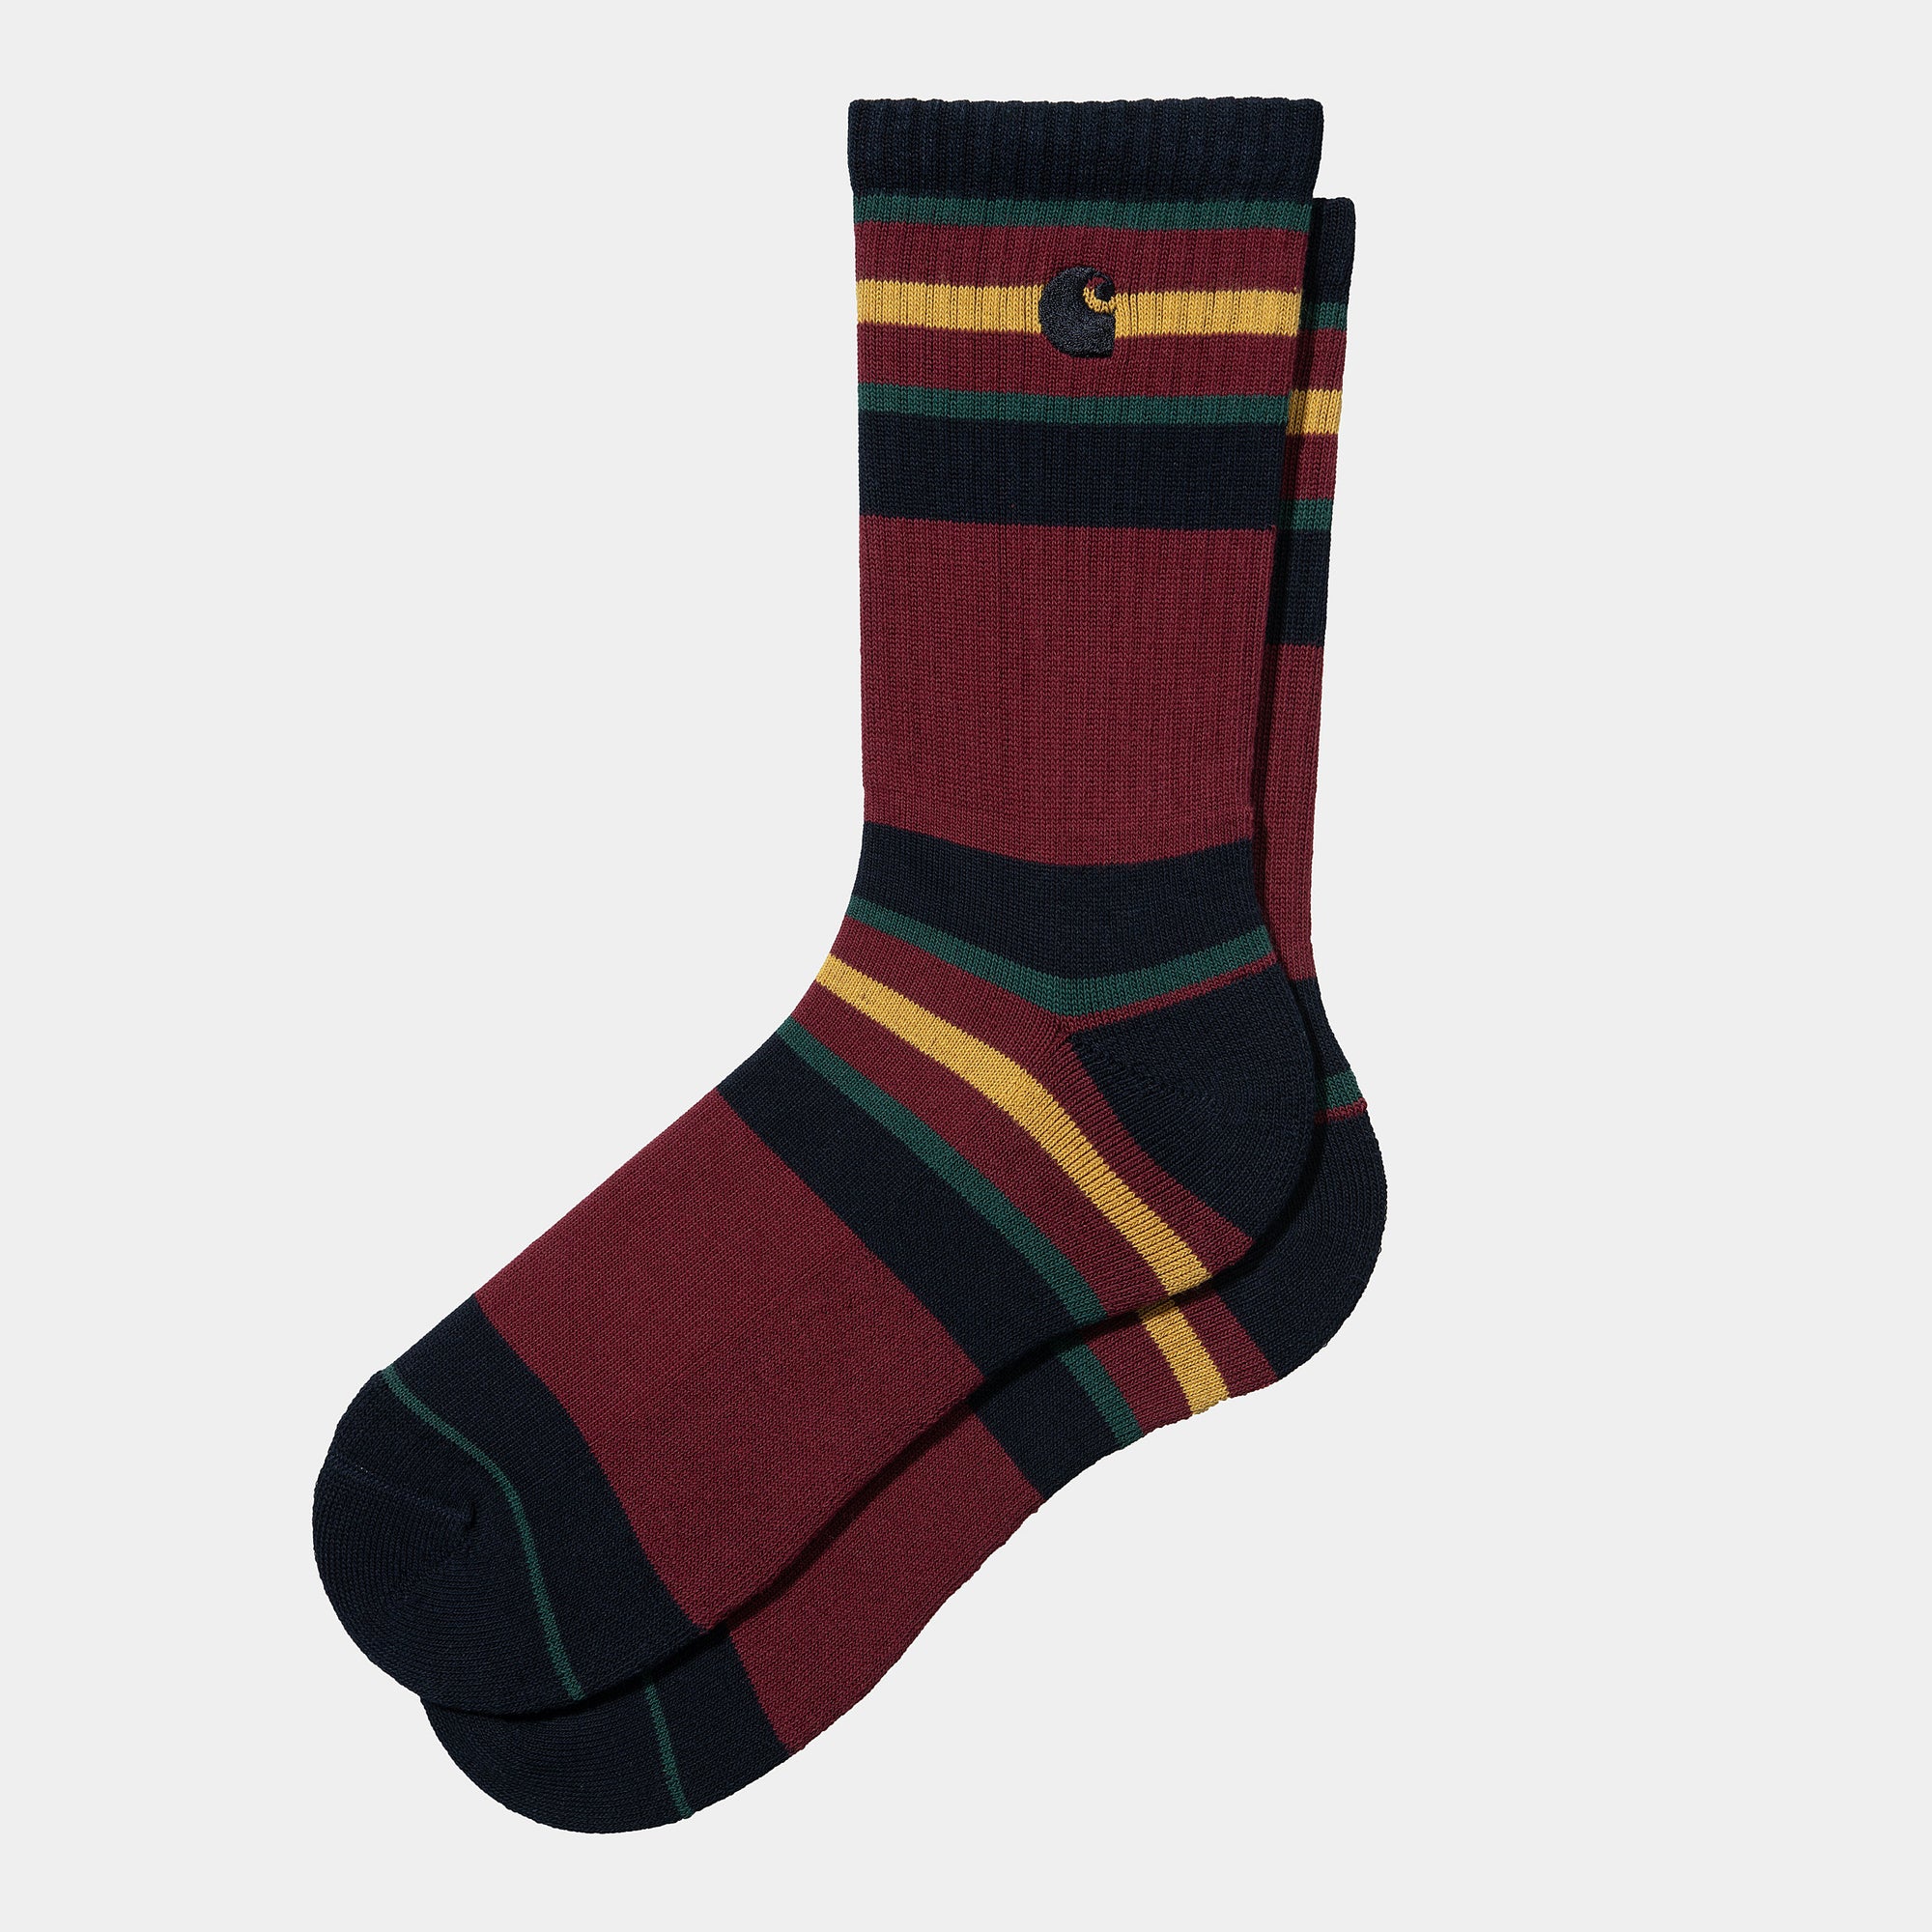 Carhartt WIP - Oregon Socks - Starco Stripe / Bordeaux